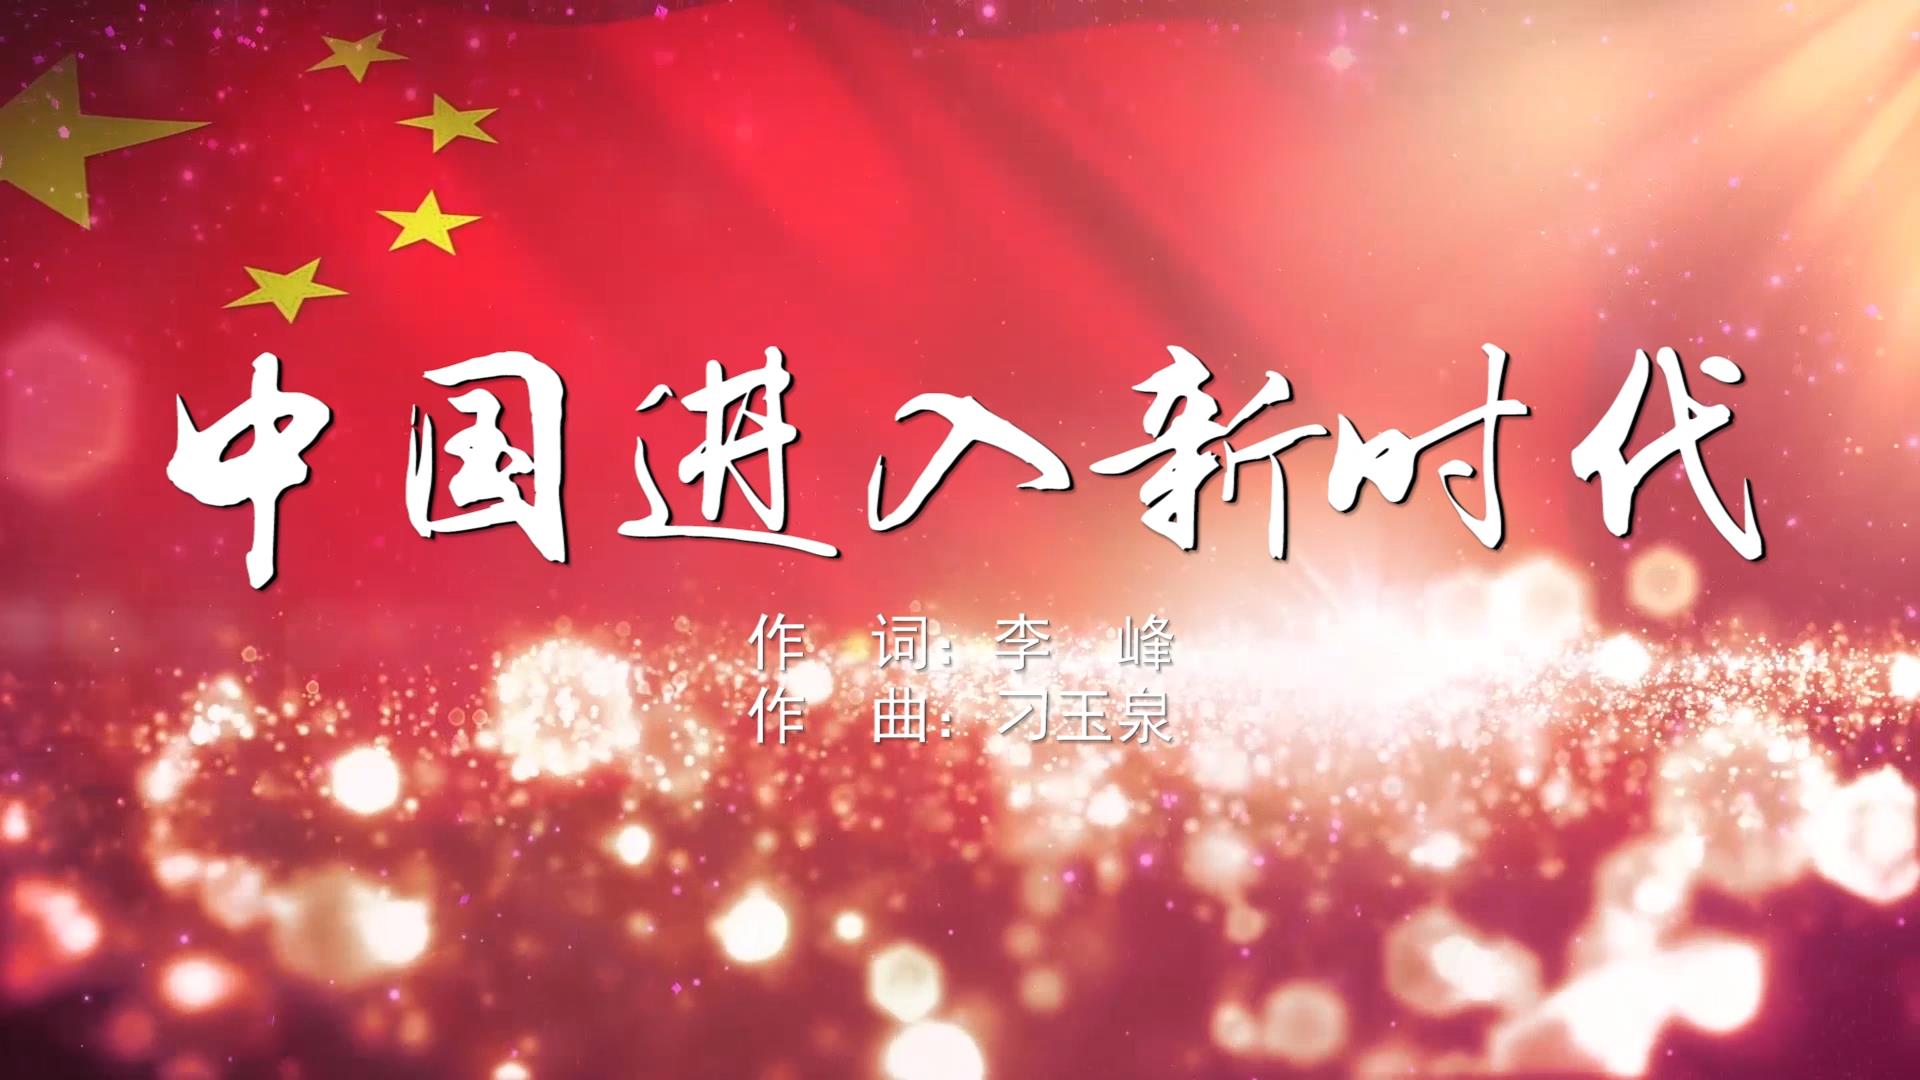 中国进入新时代 MV字幕配乐伴奏舞台演出LED背景大屏幕视频素材TV